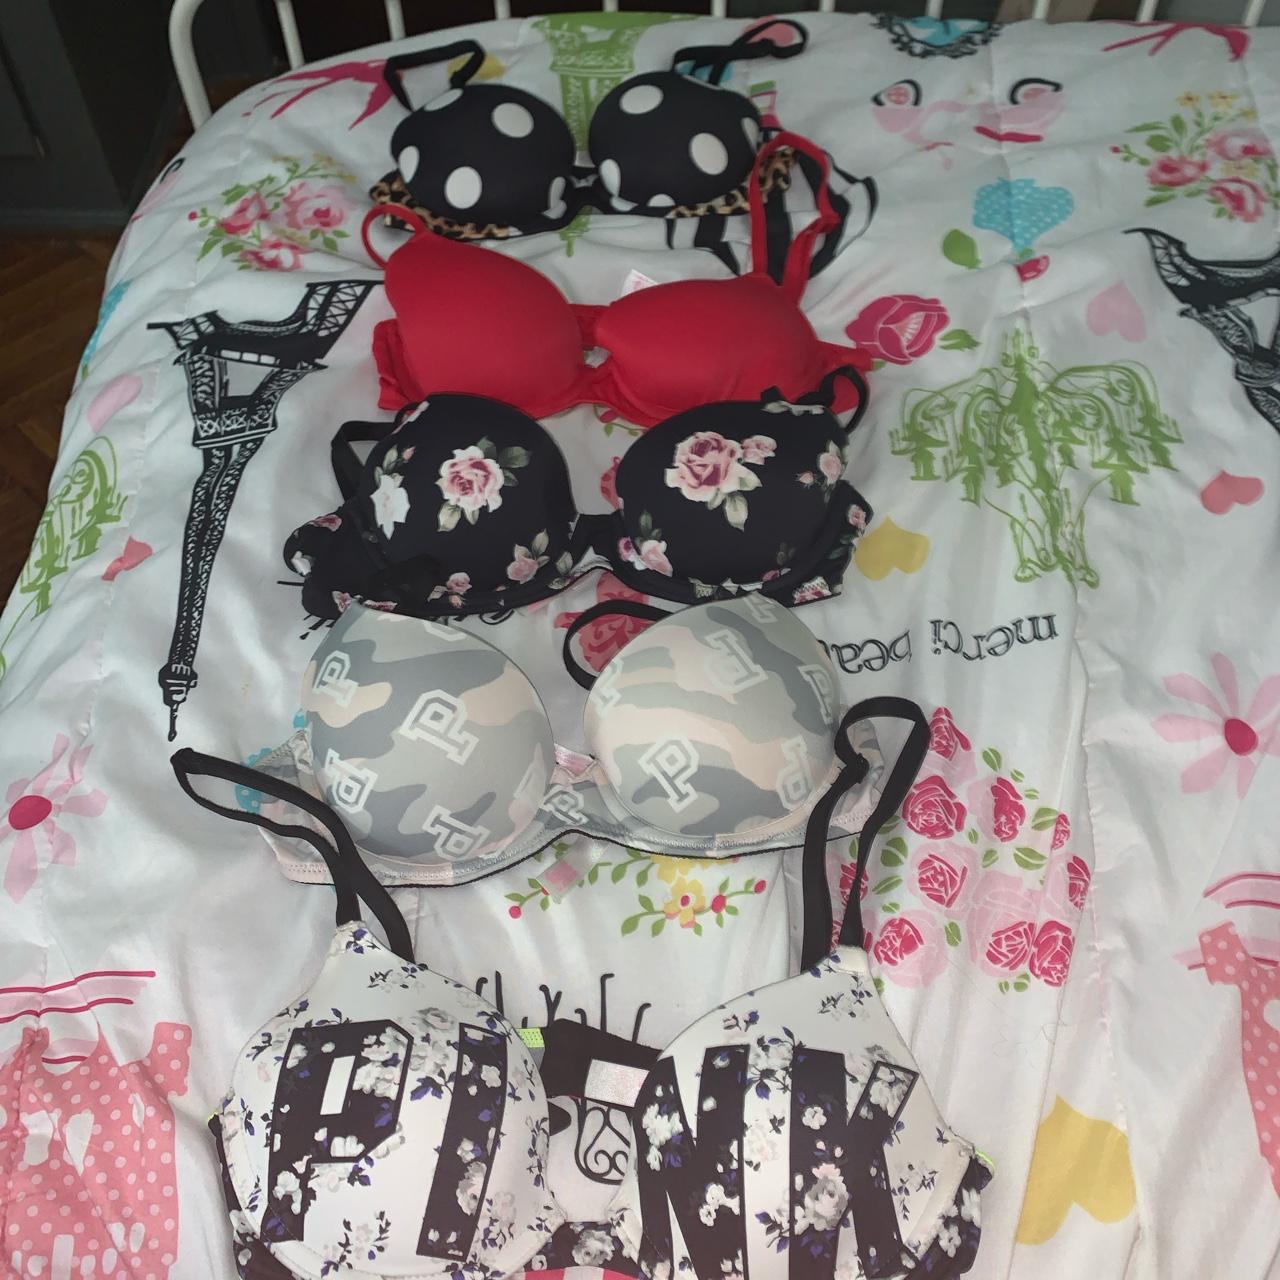 3 Sz 32A Victoria's Secret/PINK bras, bundle  Pink bra, Cute bras,  Victoria secret pink bras